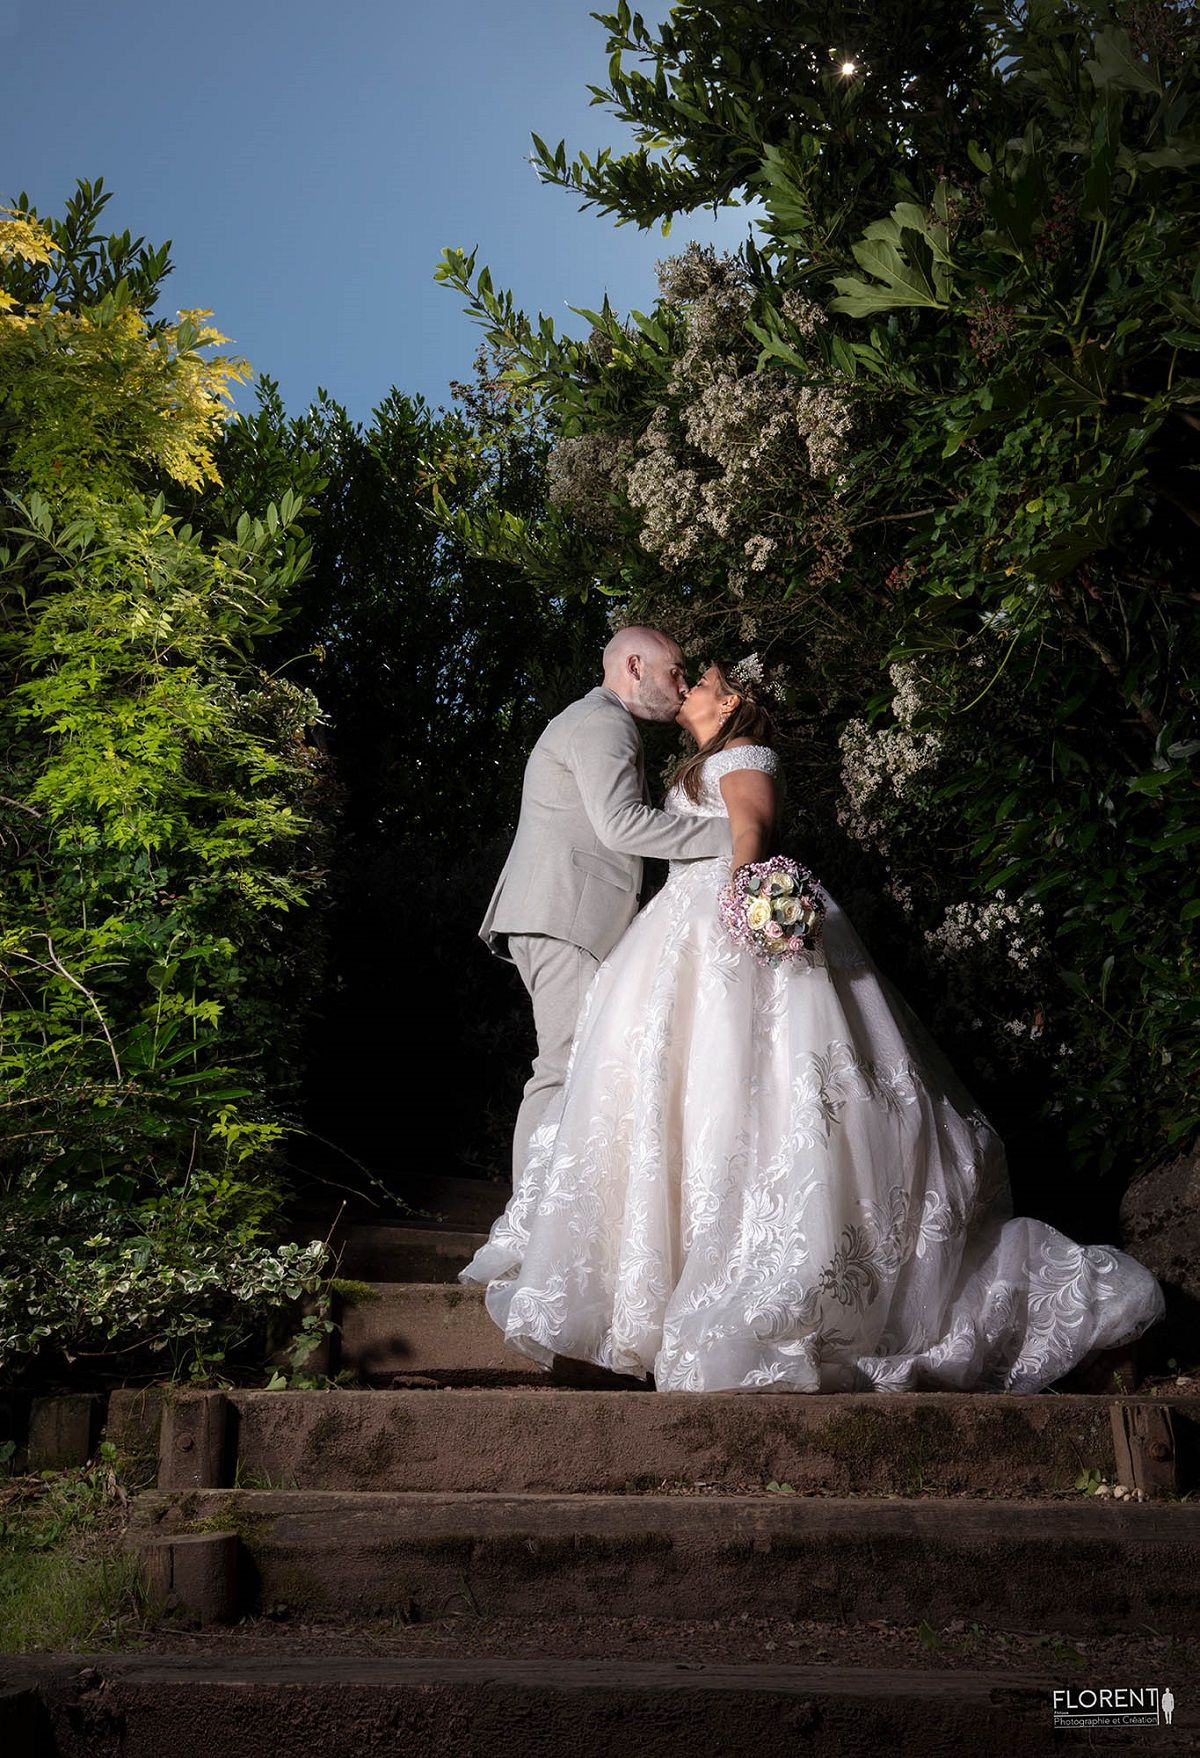 Séance photographie mariage studio florent boulogne sur mer lille paris